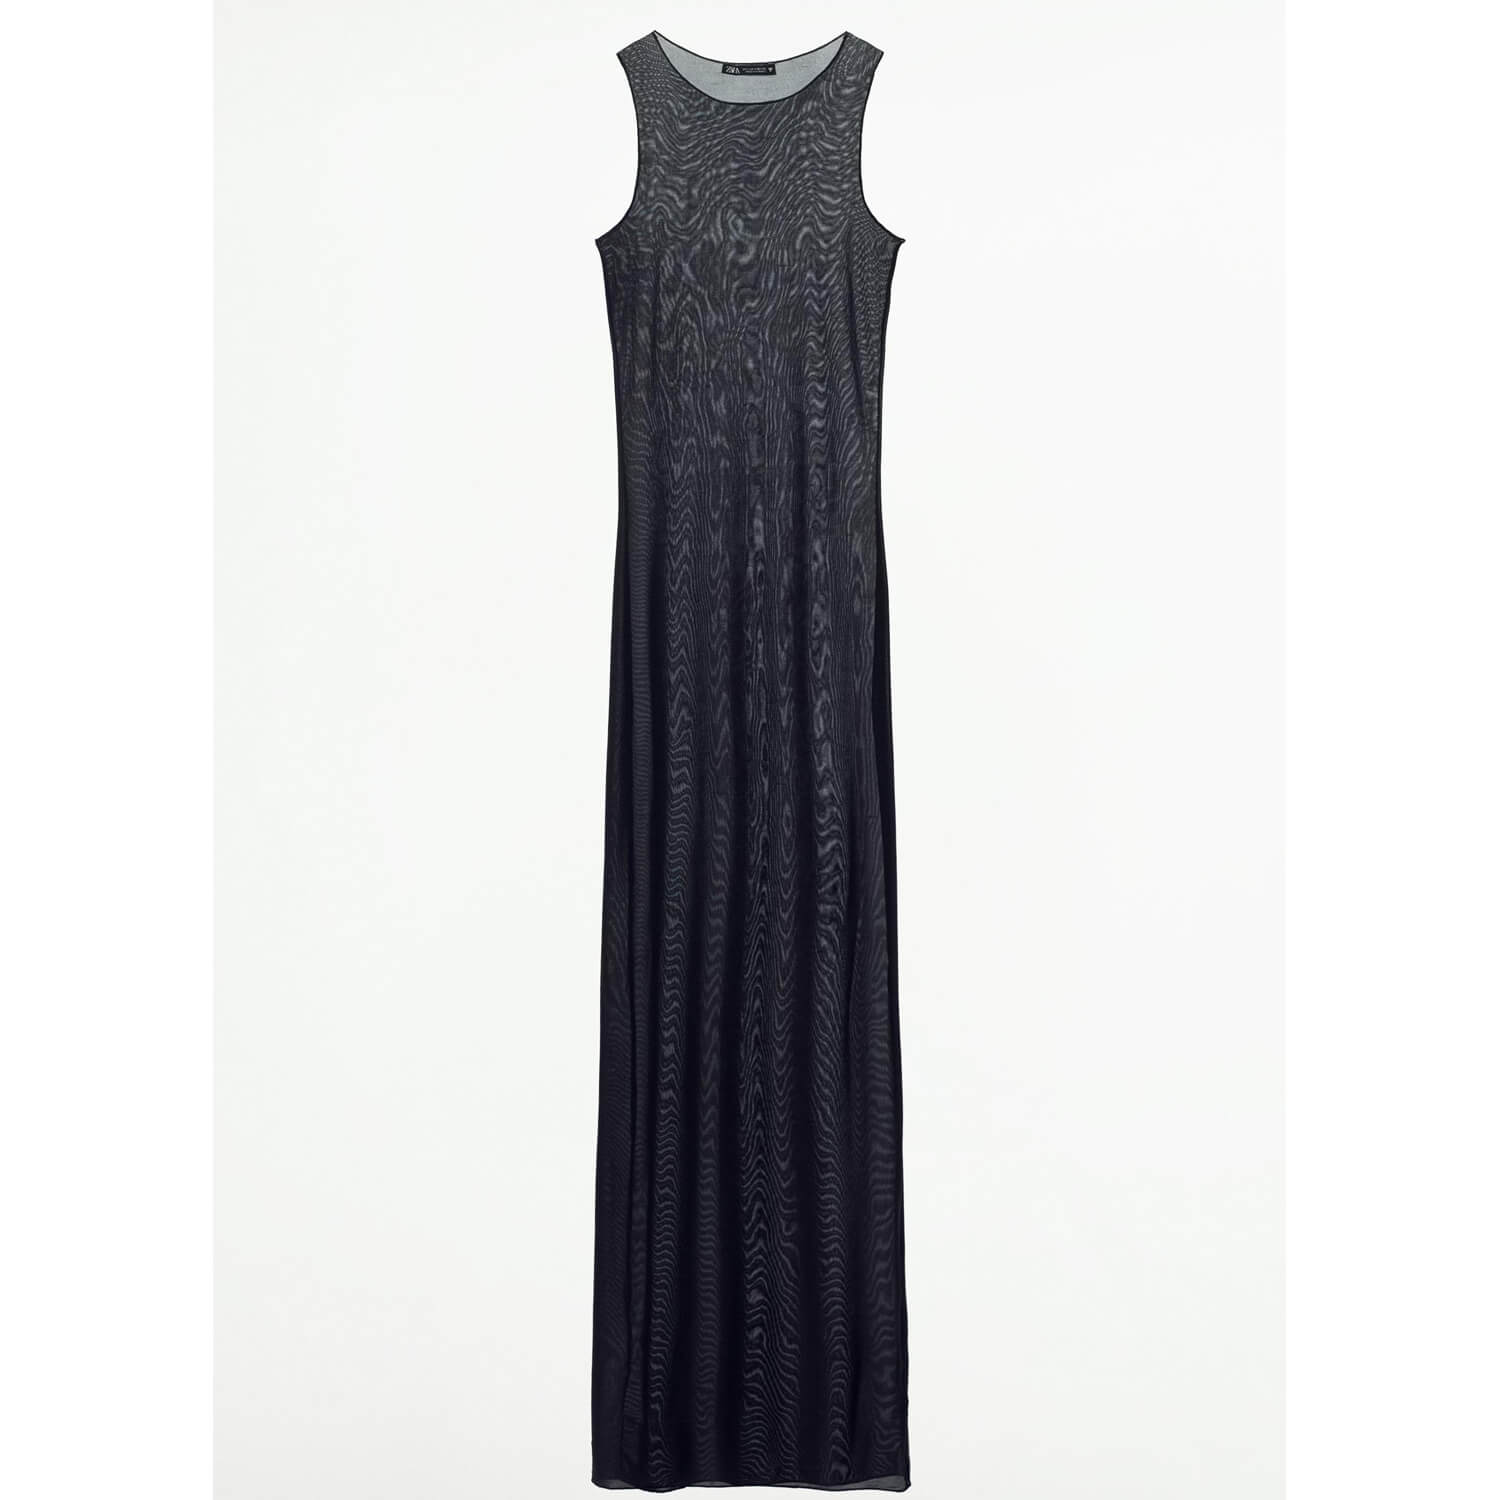 Платье Zara Long Semi-Sheer, черный платье длинное без рукавов с воланами из газовой хлопчатобумажной ткани 5 лет 108 см розовый